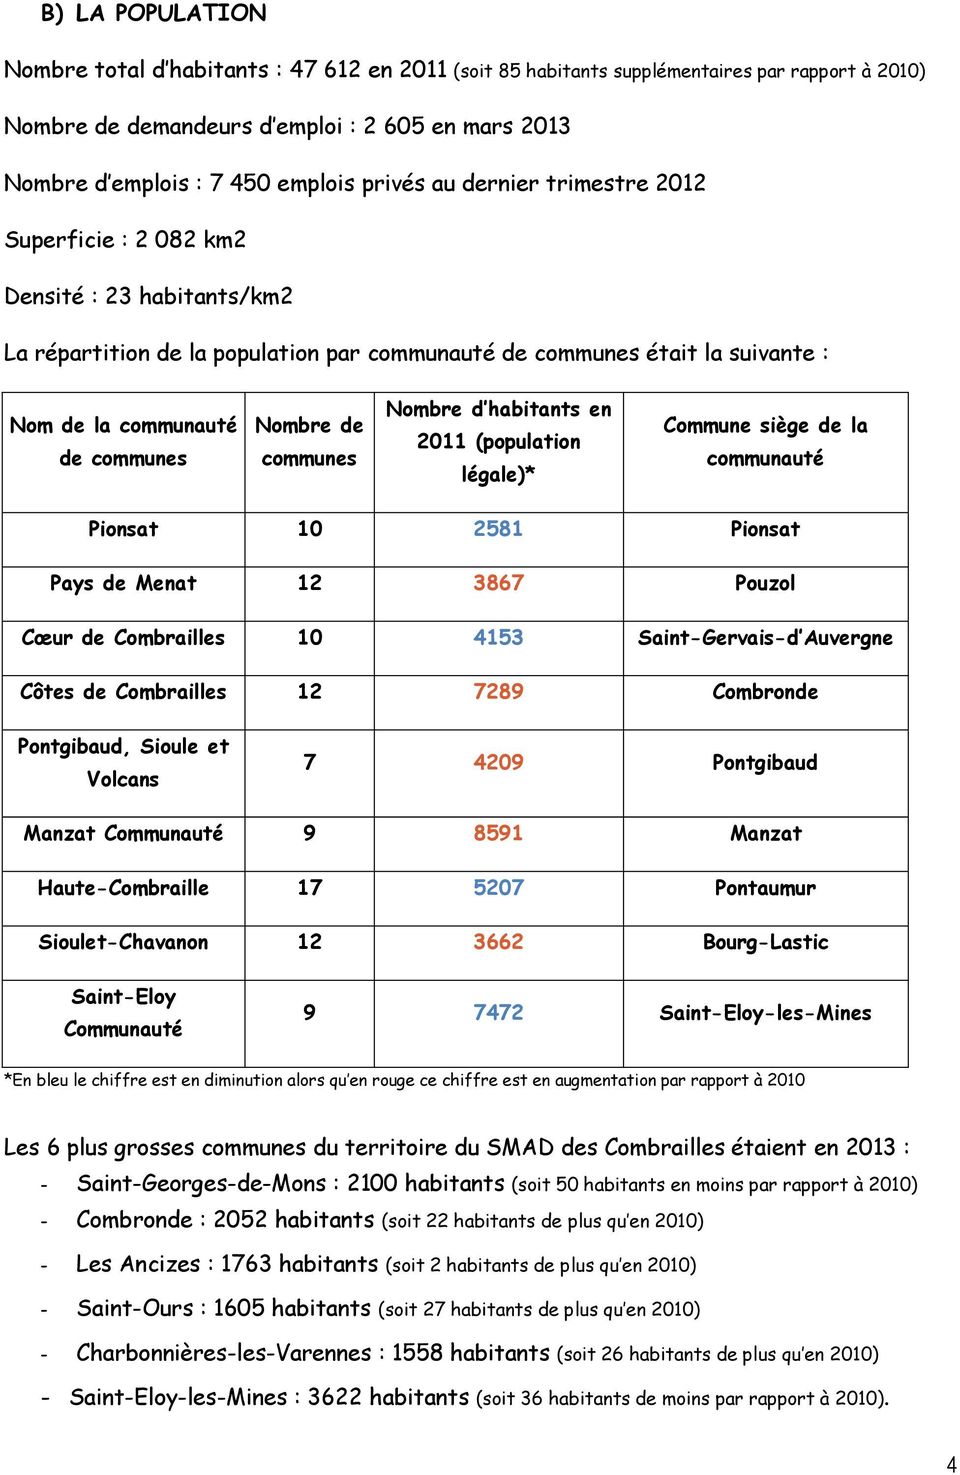 Nombre de communes Nombre d habitants en 2011 (population légale)* Commune siège de la communauté Pionsat 10 2581 Pionsat Pays de Menat 12 3867 Pouzol Cœur de Combrailles 10 4153 Saint-Gervais-d